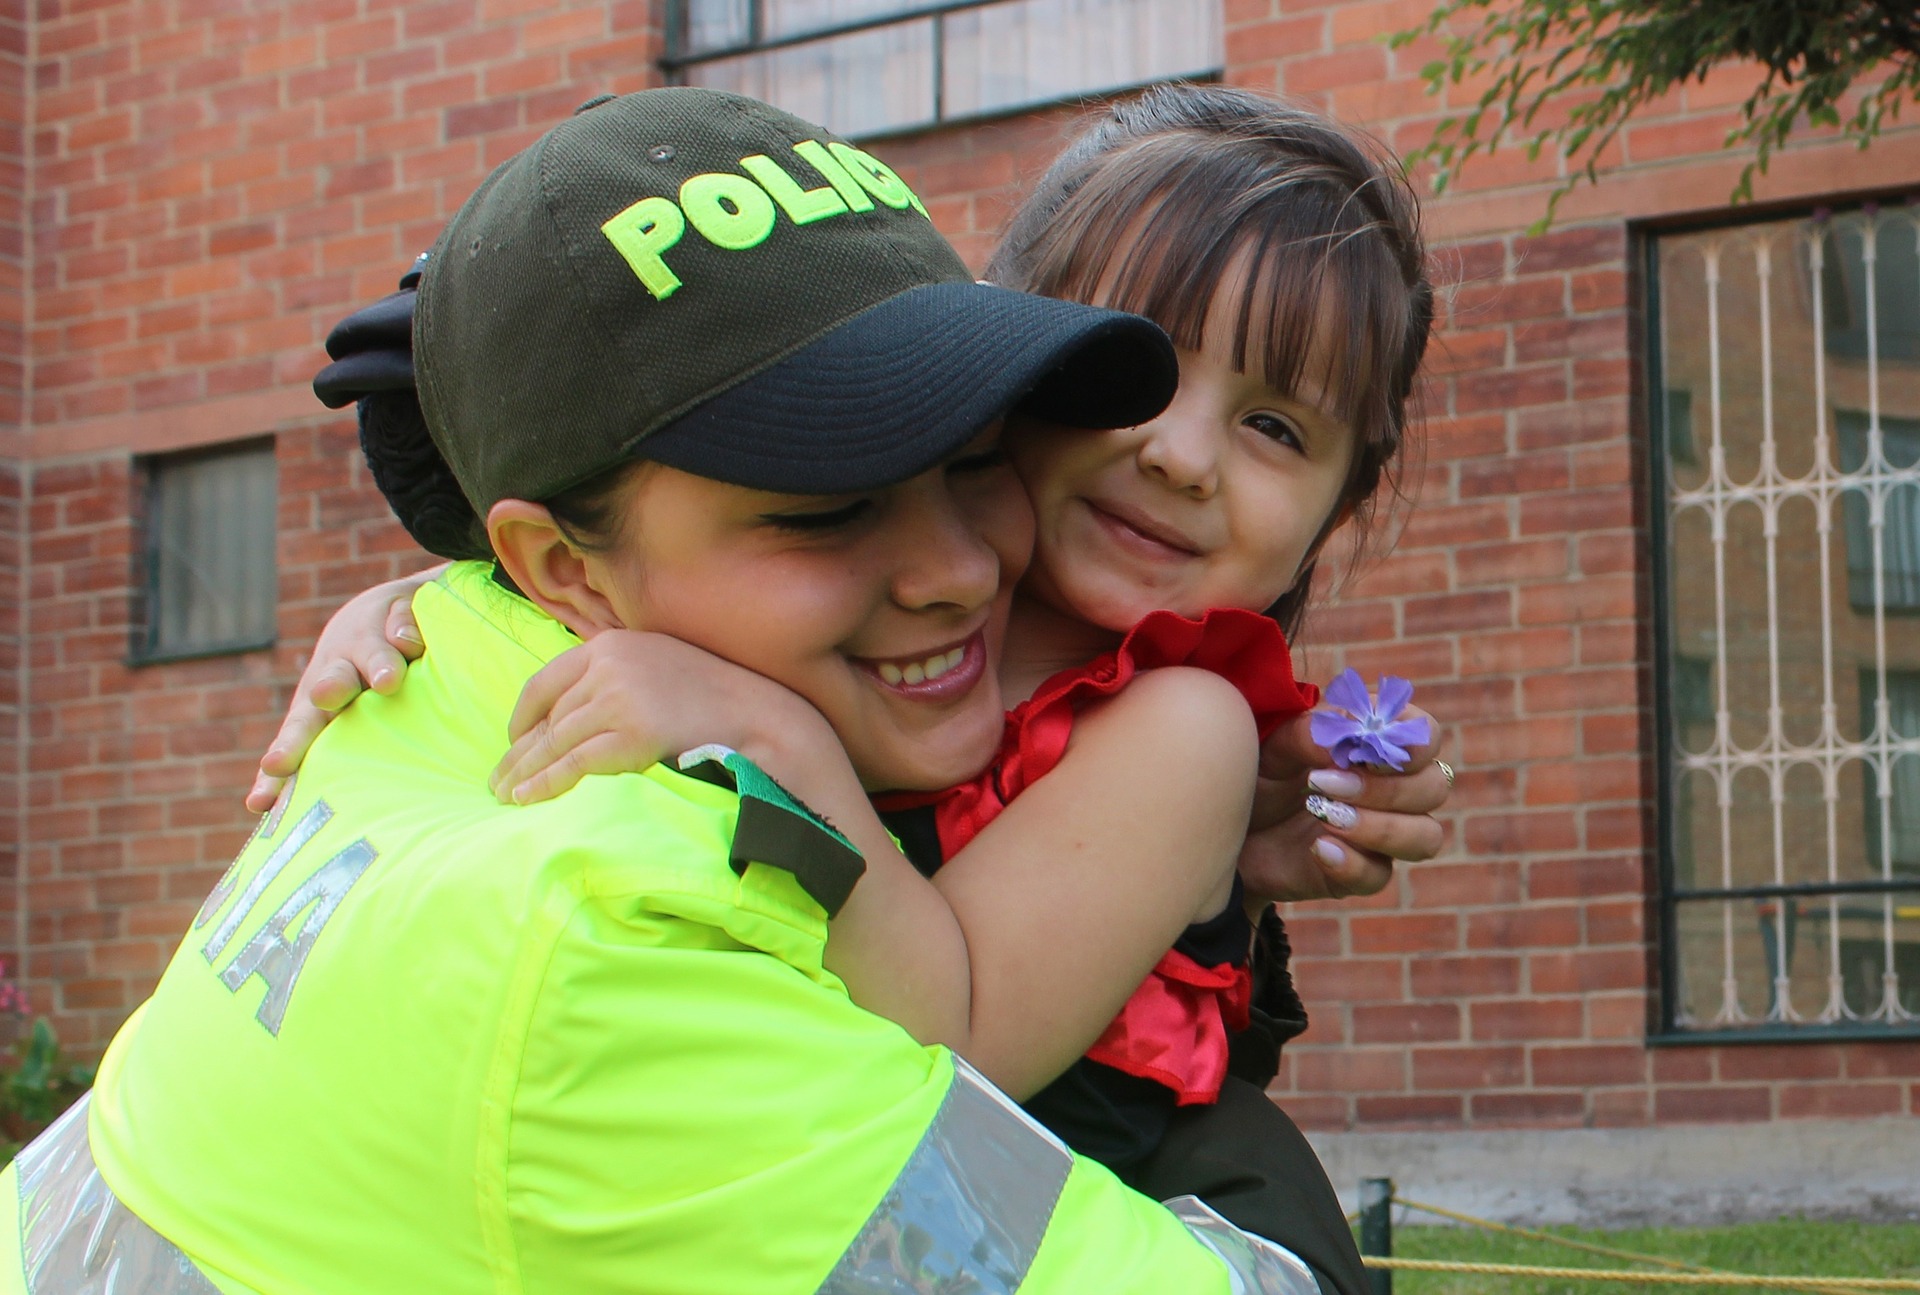 colombianos policia niños - carlosacelyb - Pixabay (CC0) colombia segundo país más feliz del mundo